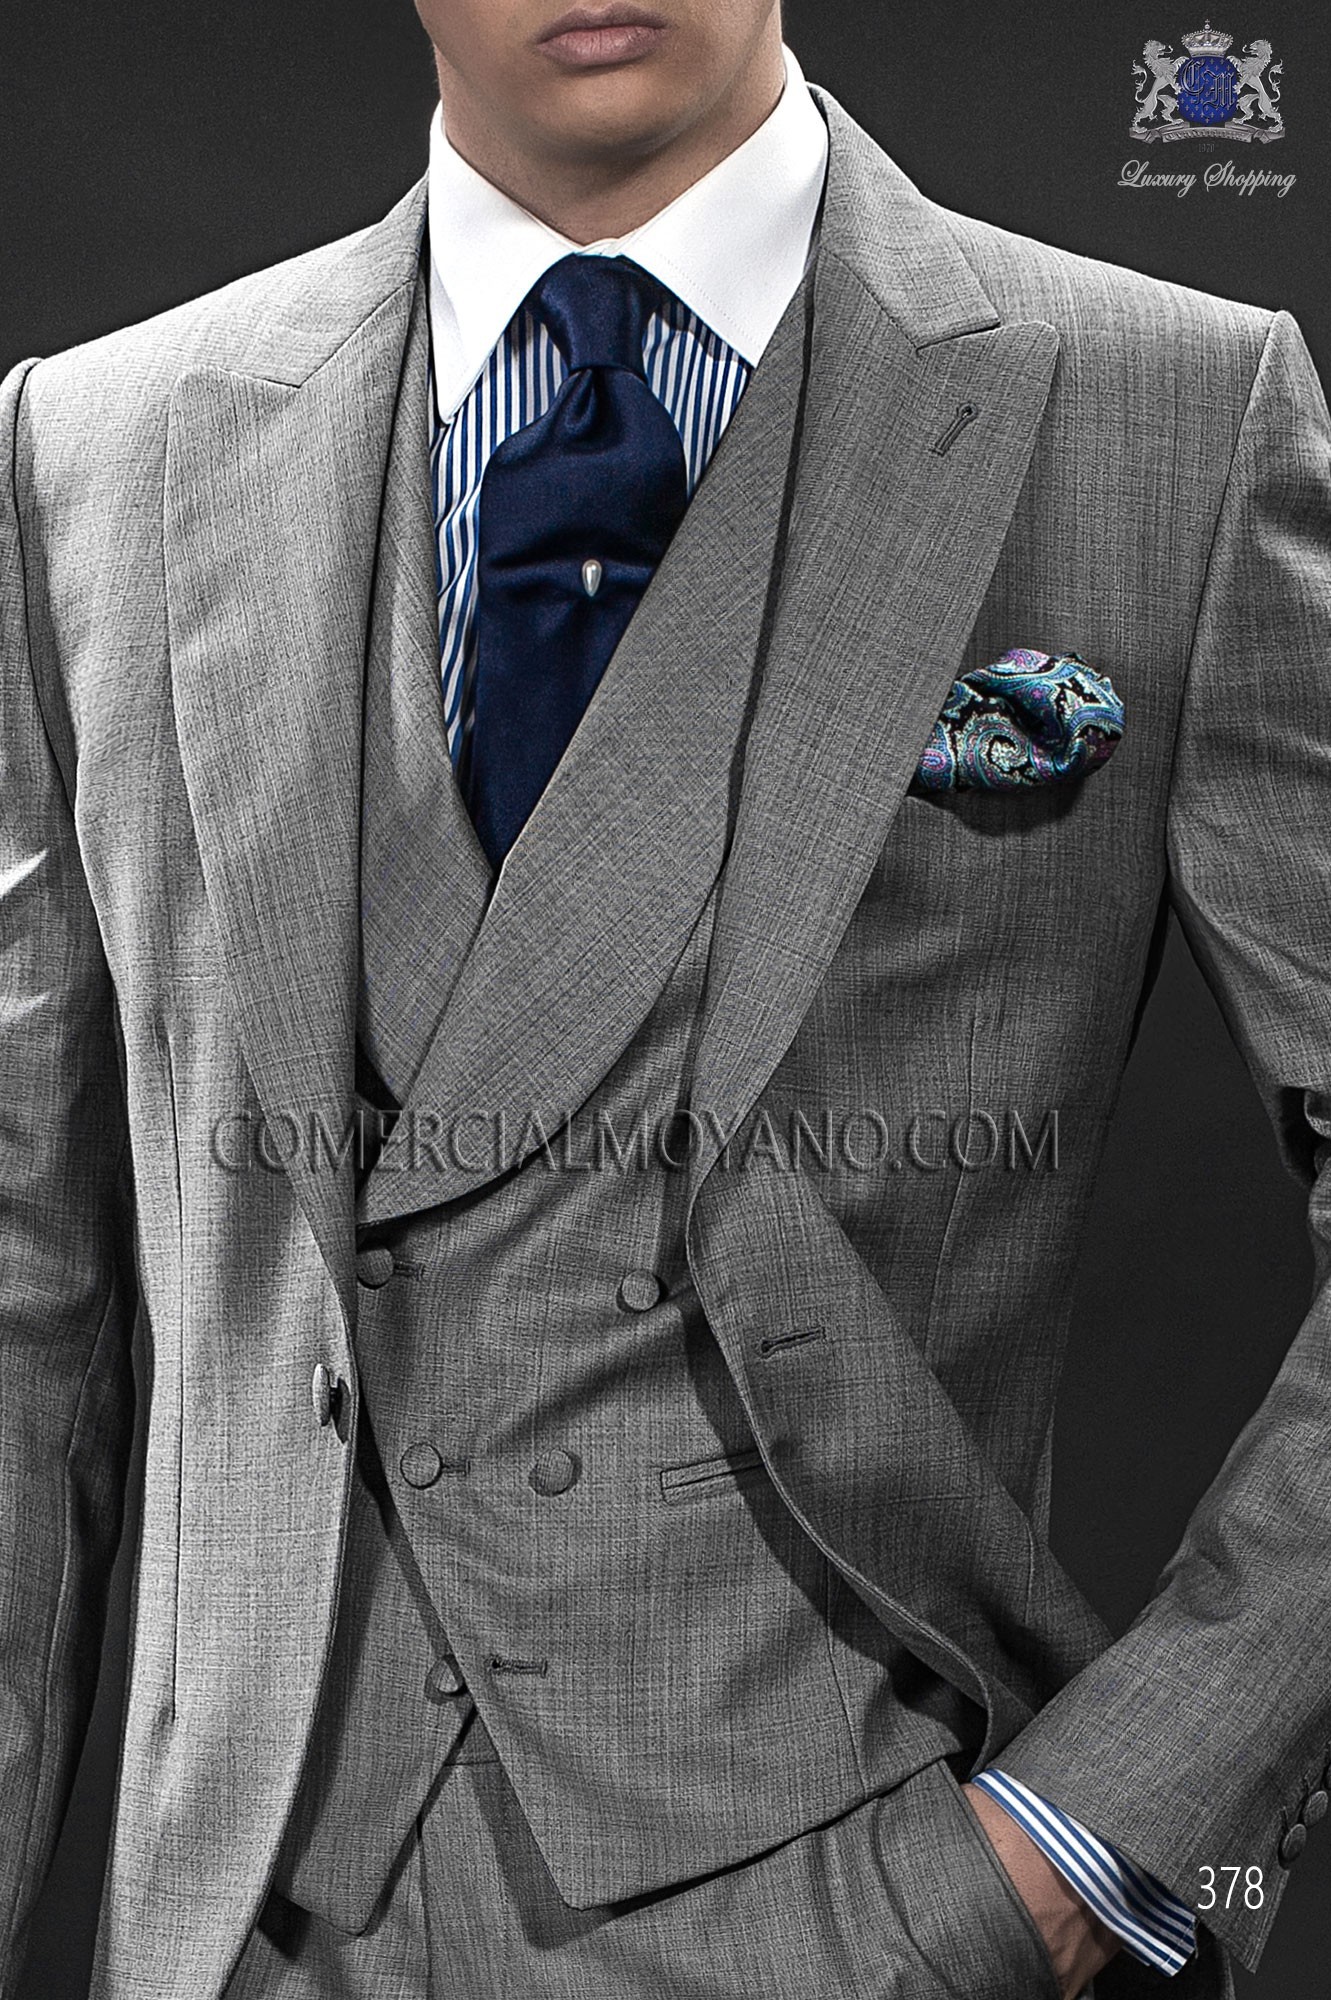 Italian gentleman grey men wedding suit, model: 378 Mario Moyano Gentleman Collection